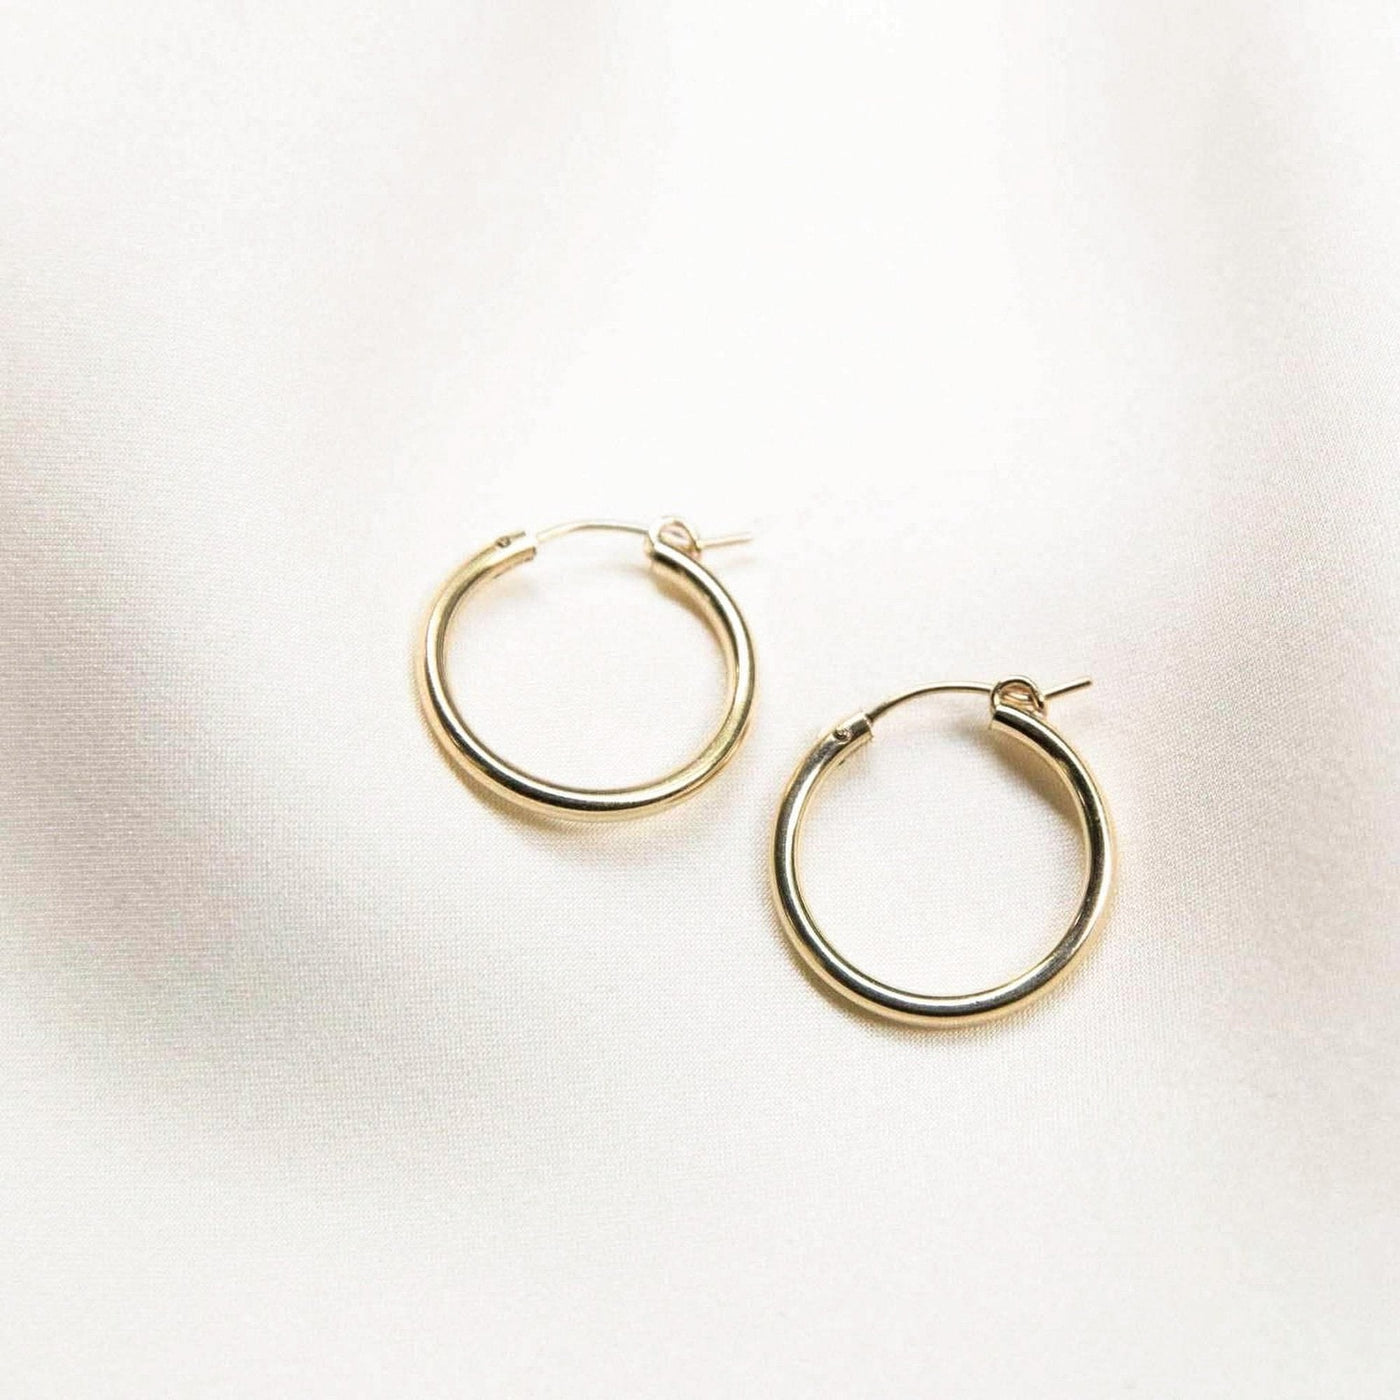 Everyday Hoop Earrings by Simple & Dainty Jewelry